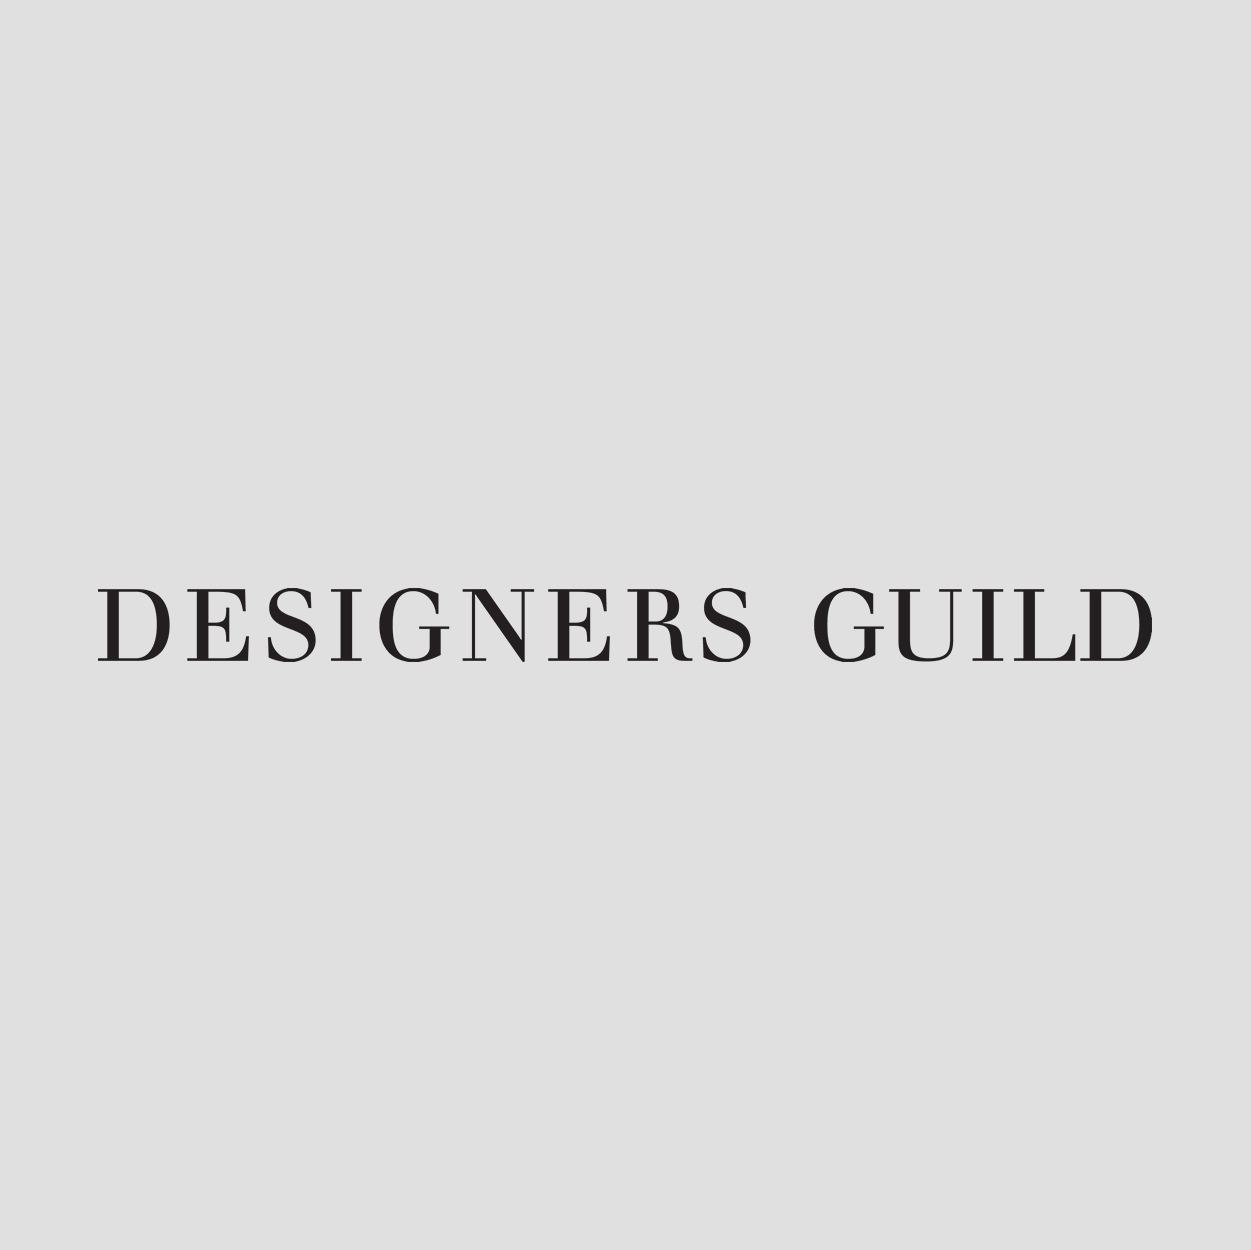 DESIGNERS-GUILD Square